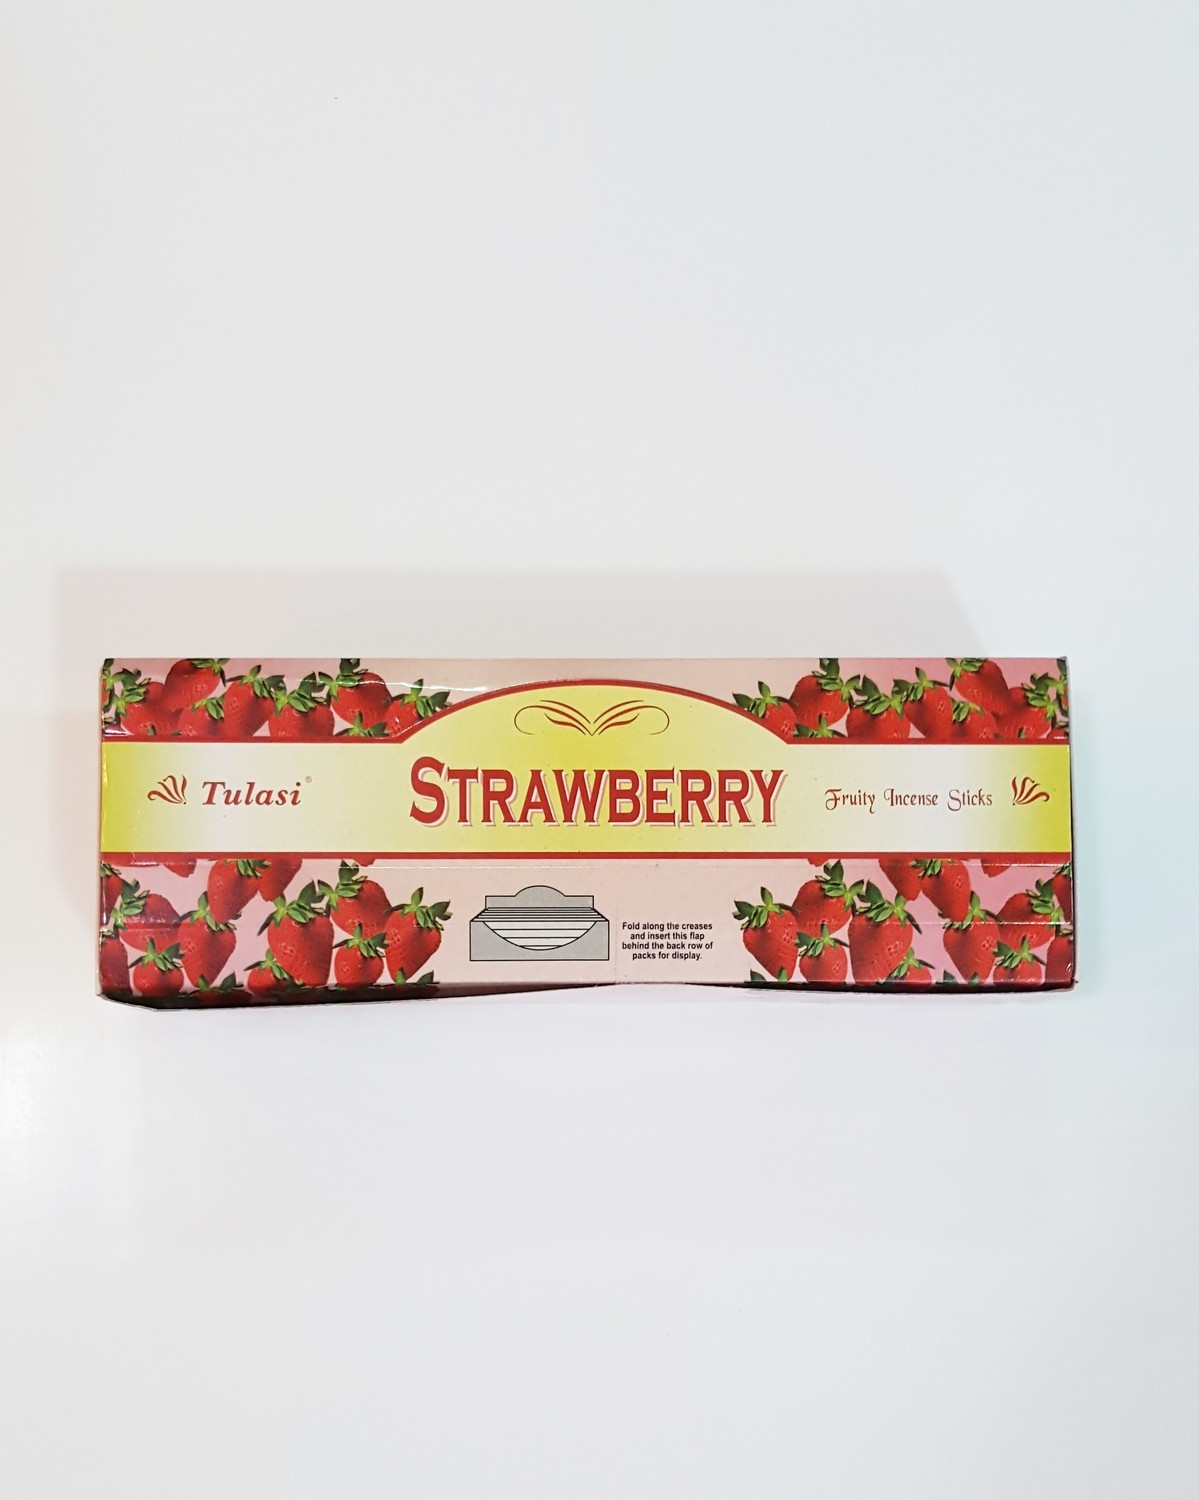 Tulasi Strawberry Box - 6 packs